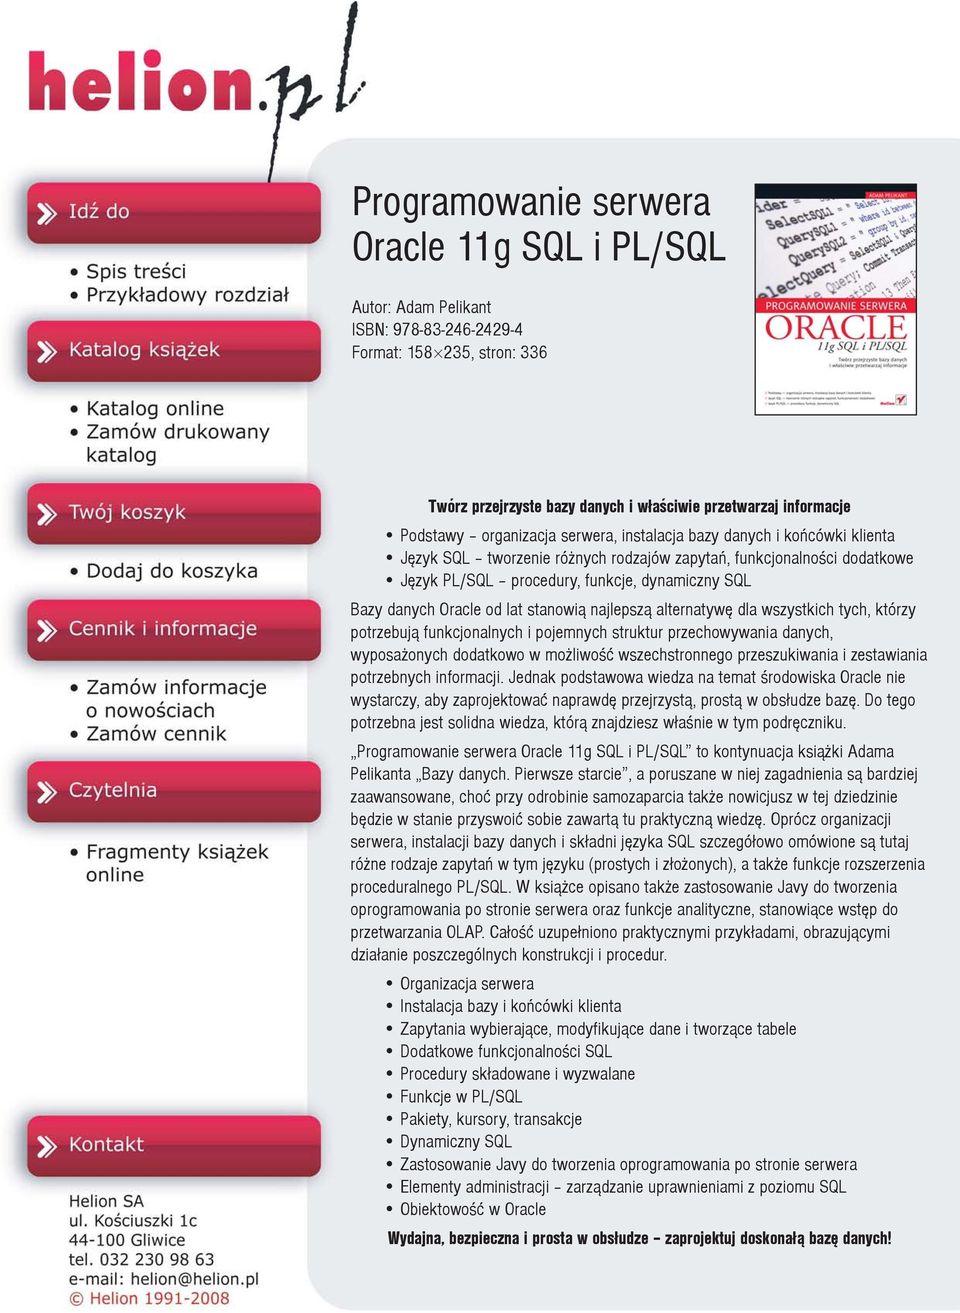 Oracle od lat stanowi¹ najlepsz¹ alternatywê dla wszystkich tych, którzy potrzebuj¹ funkcjonalnych i pojemnych struktur przechowywania danych, wyposa onych dodatkowo w mo liwoœæ wszechstronnego